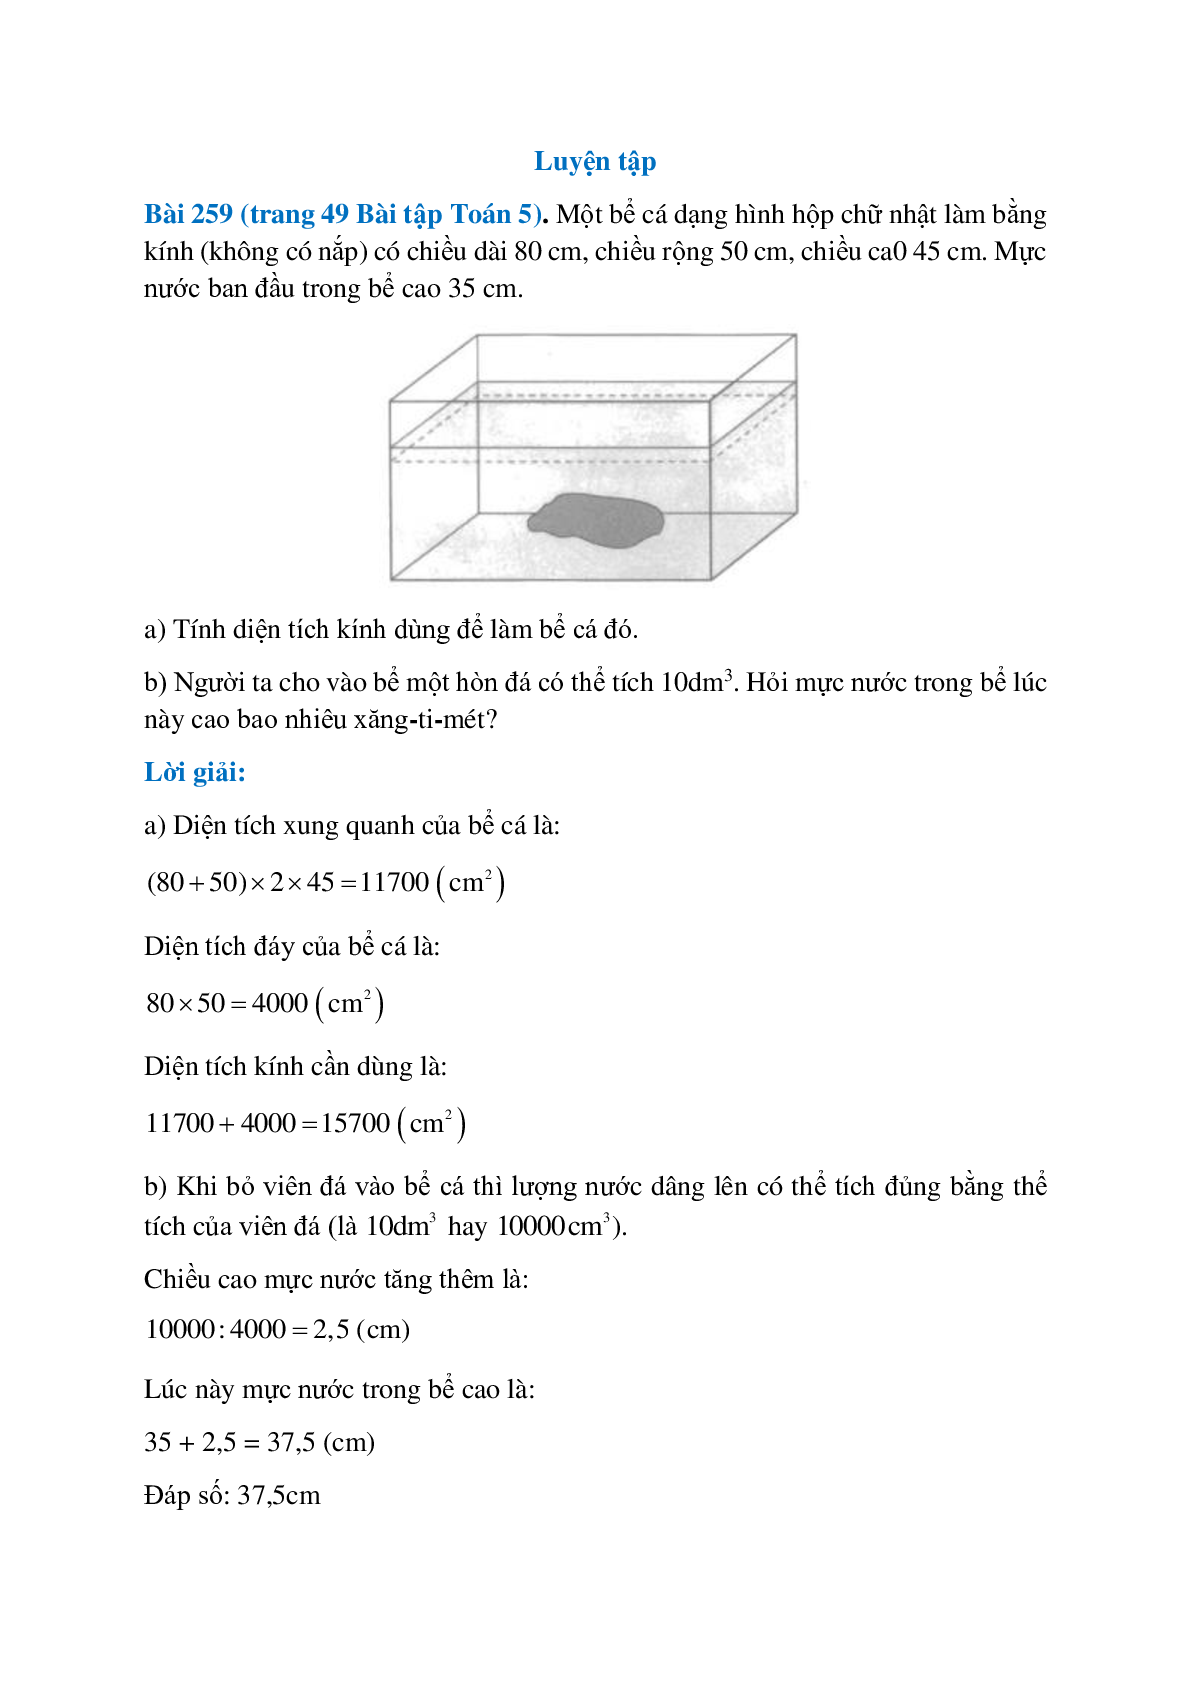 Một bể cá dạng hình hộp chữ nhật làm bằng kính (trang 1)